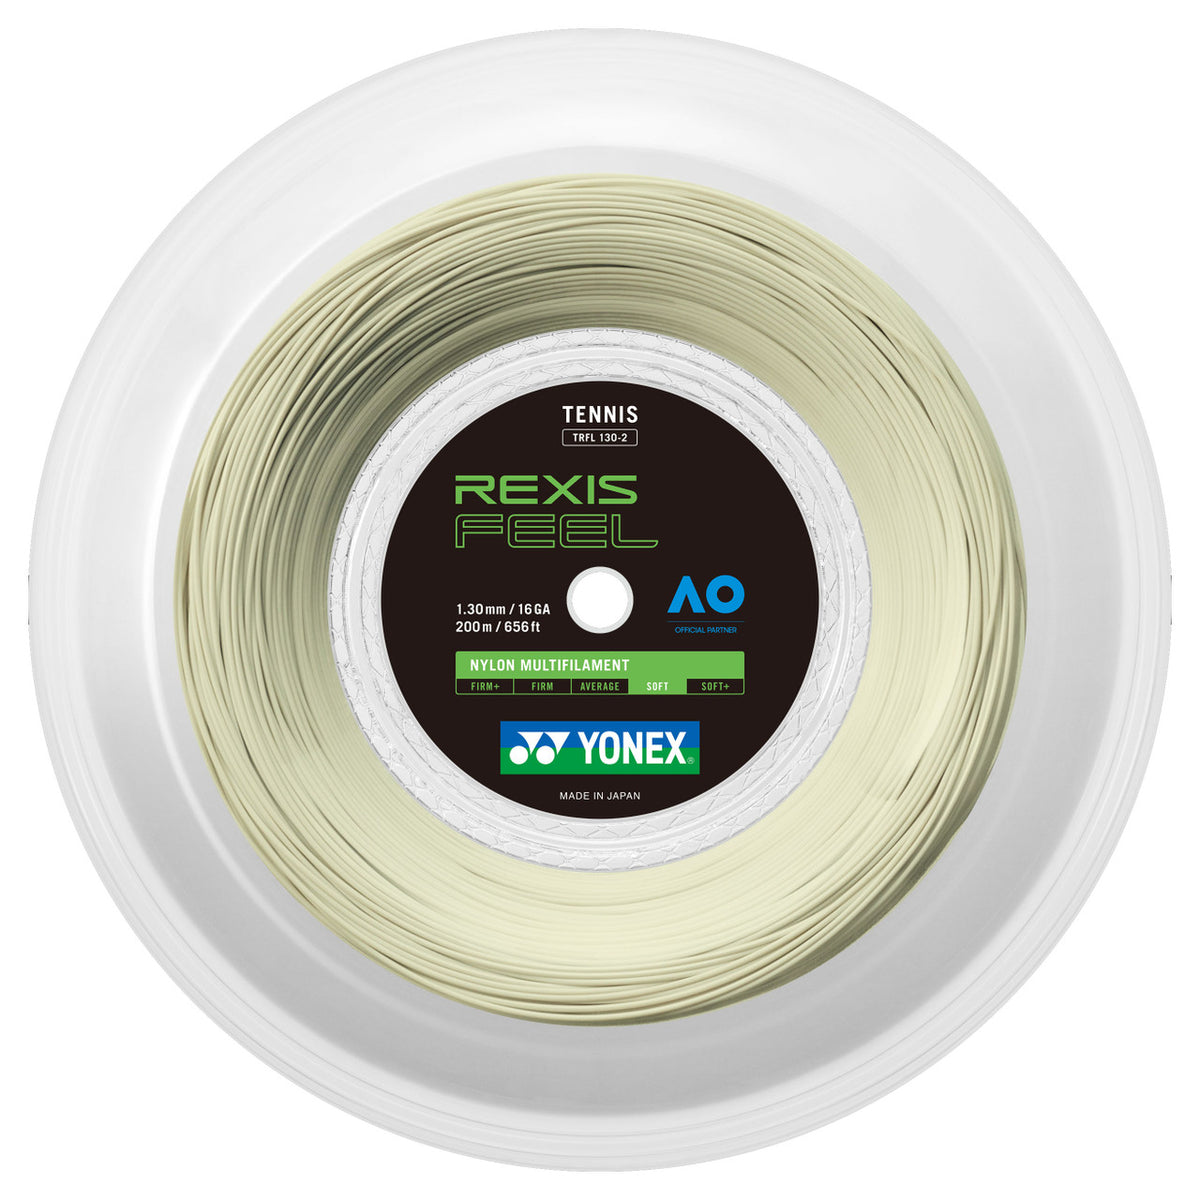 Yonex Rexis 1.30mm 200m 网球线米白色